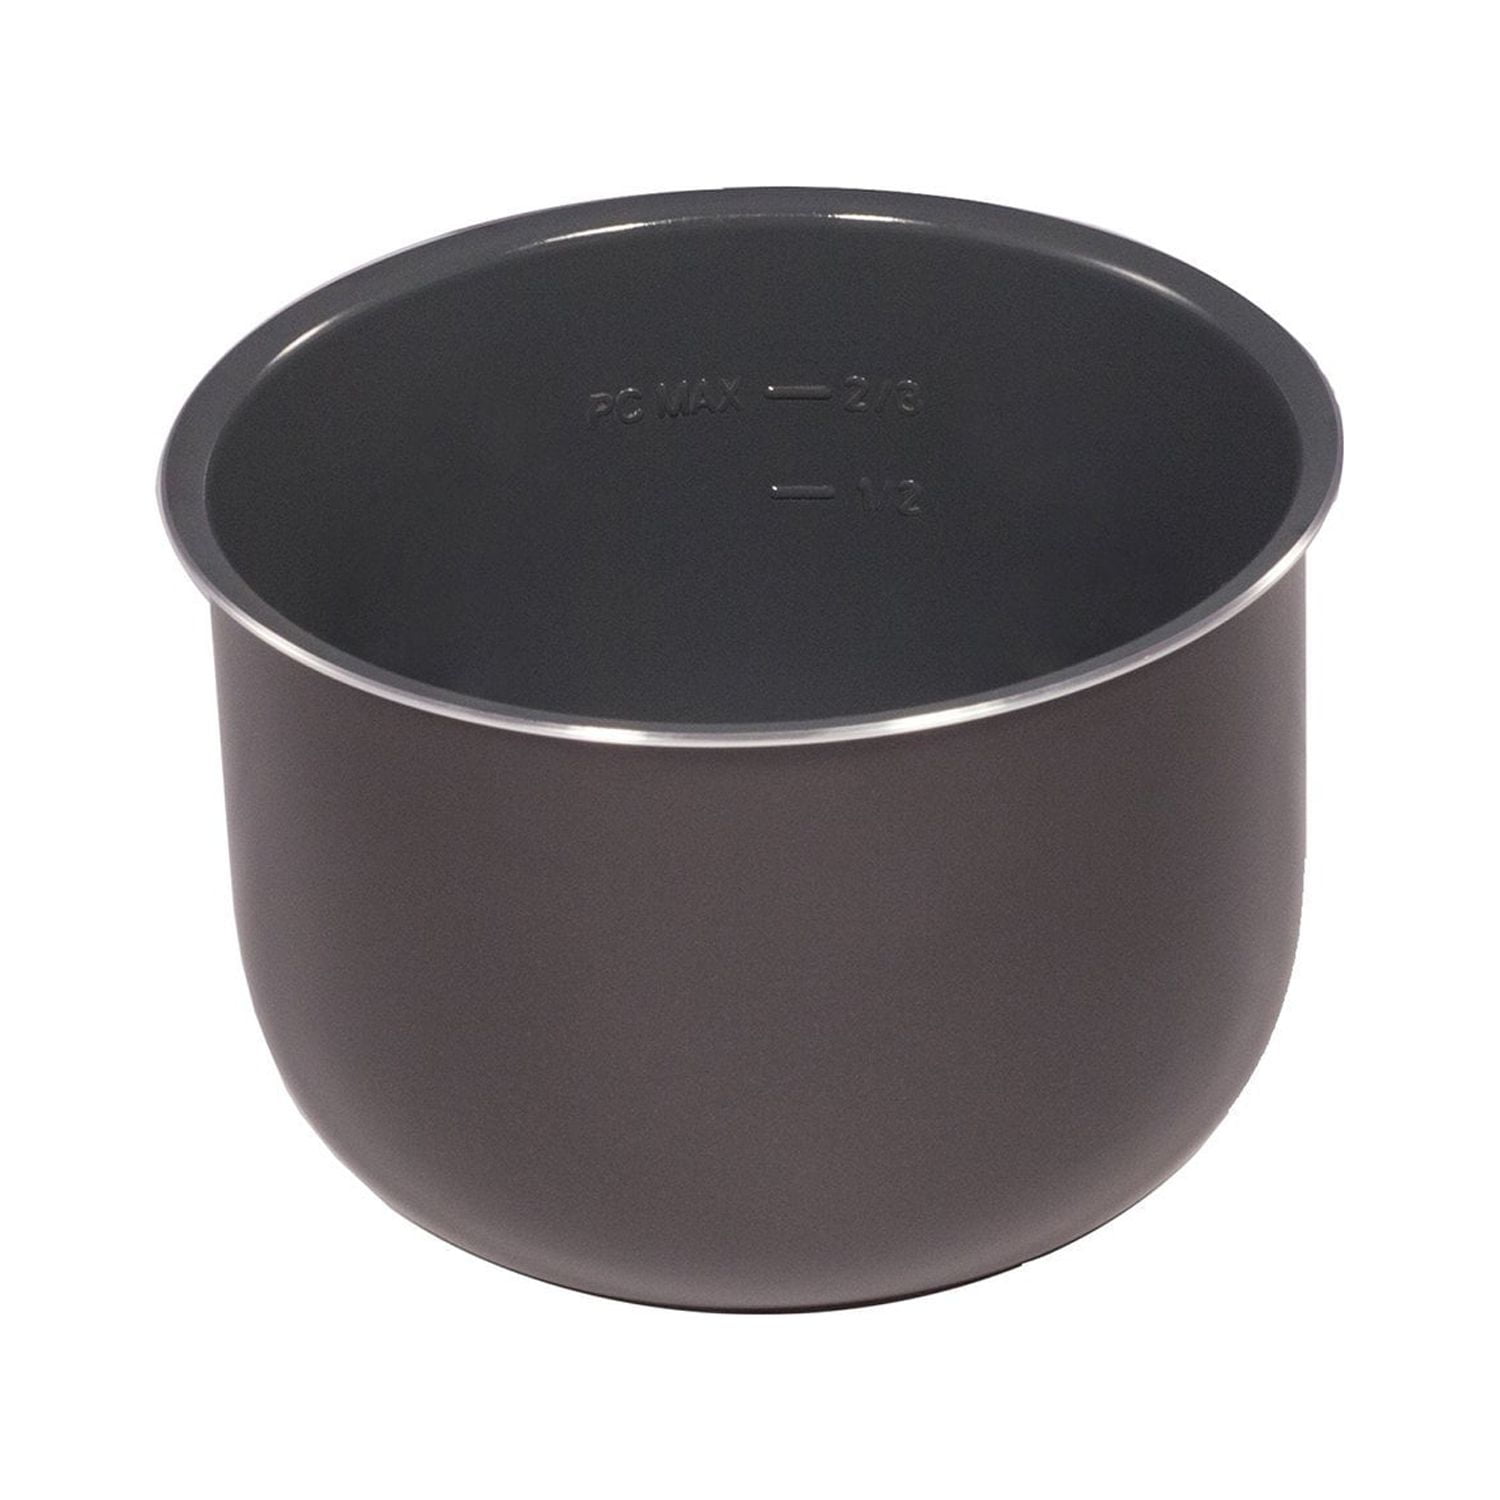 Genuine Instant Pot Ceramic Non-Stick Interior Coated Inner Cooking Pot - 6  Quart